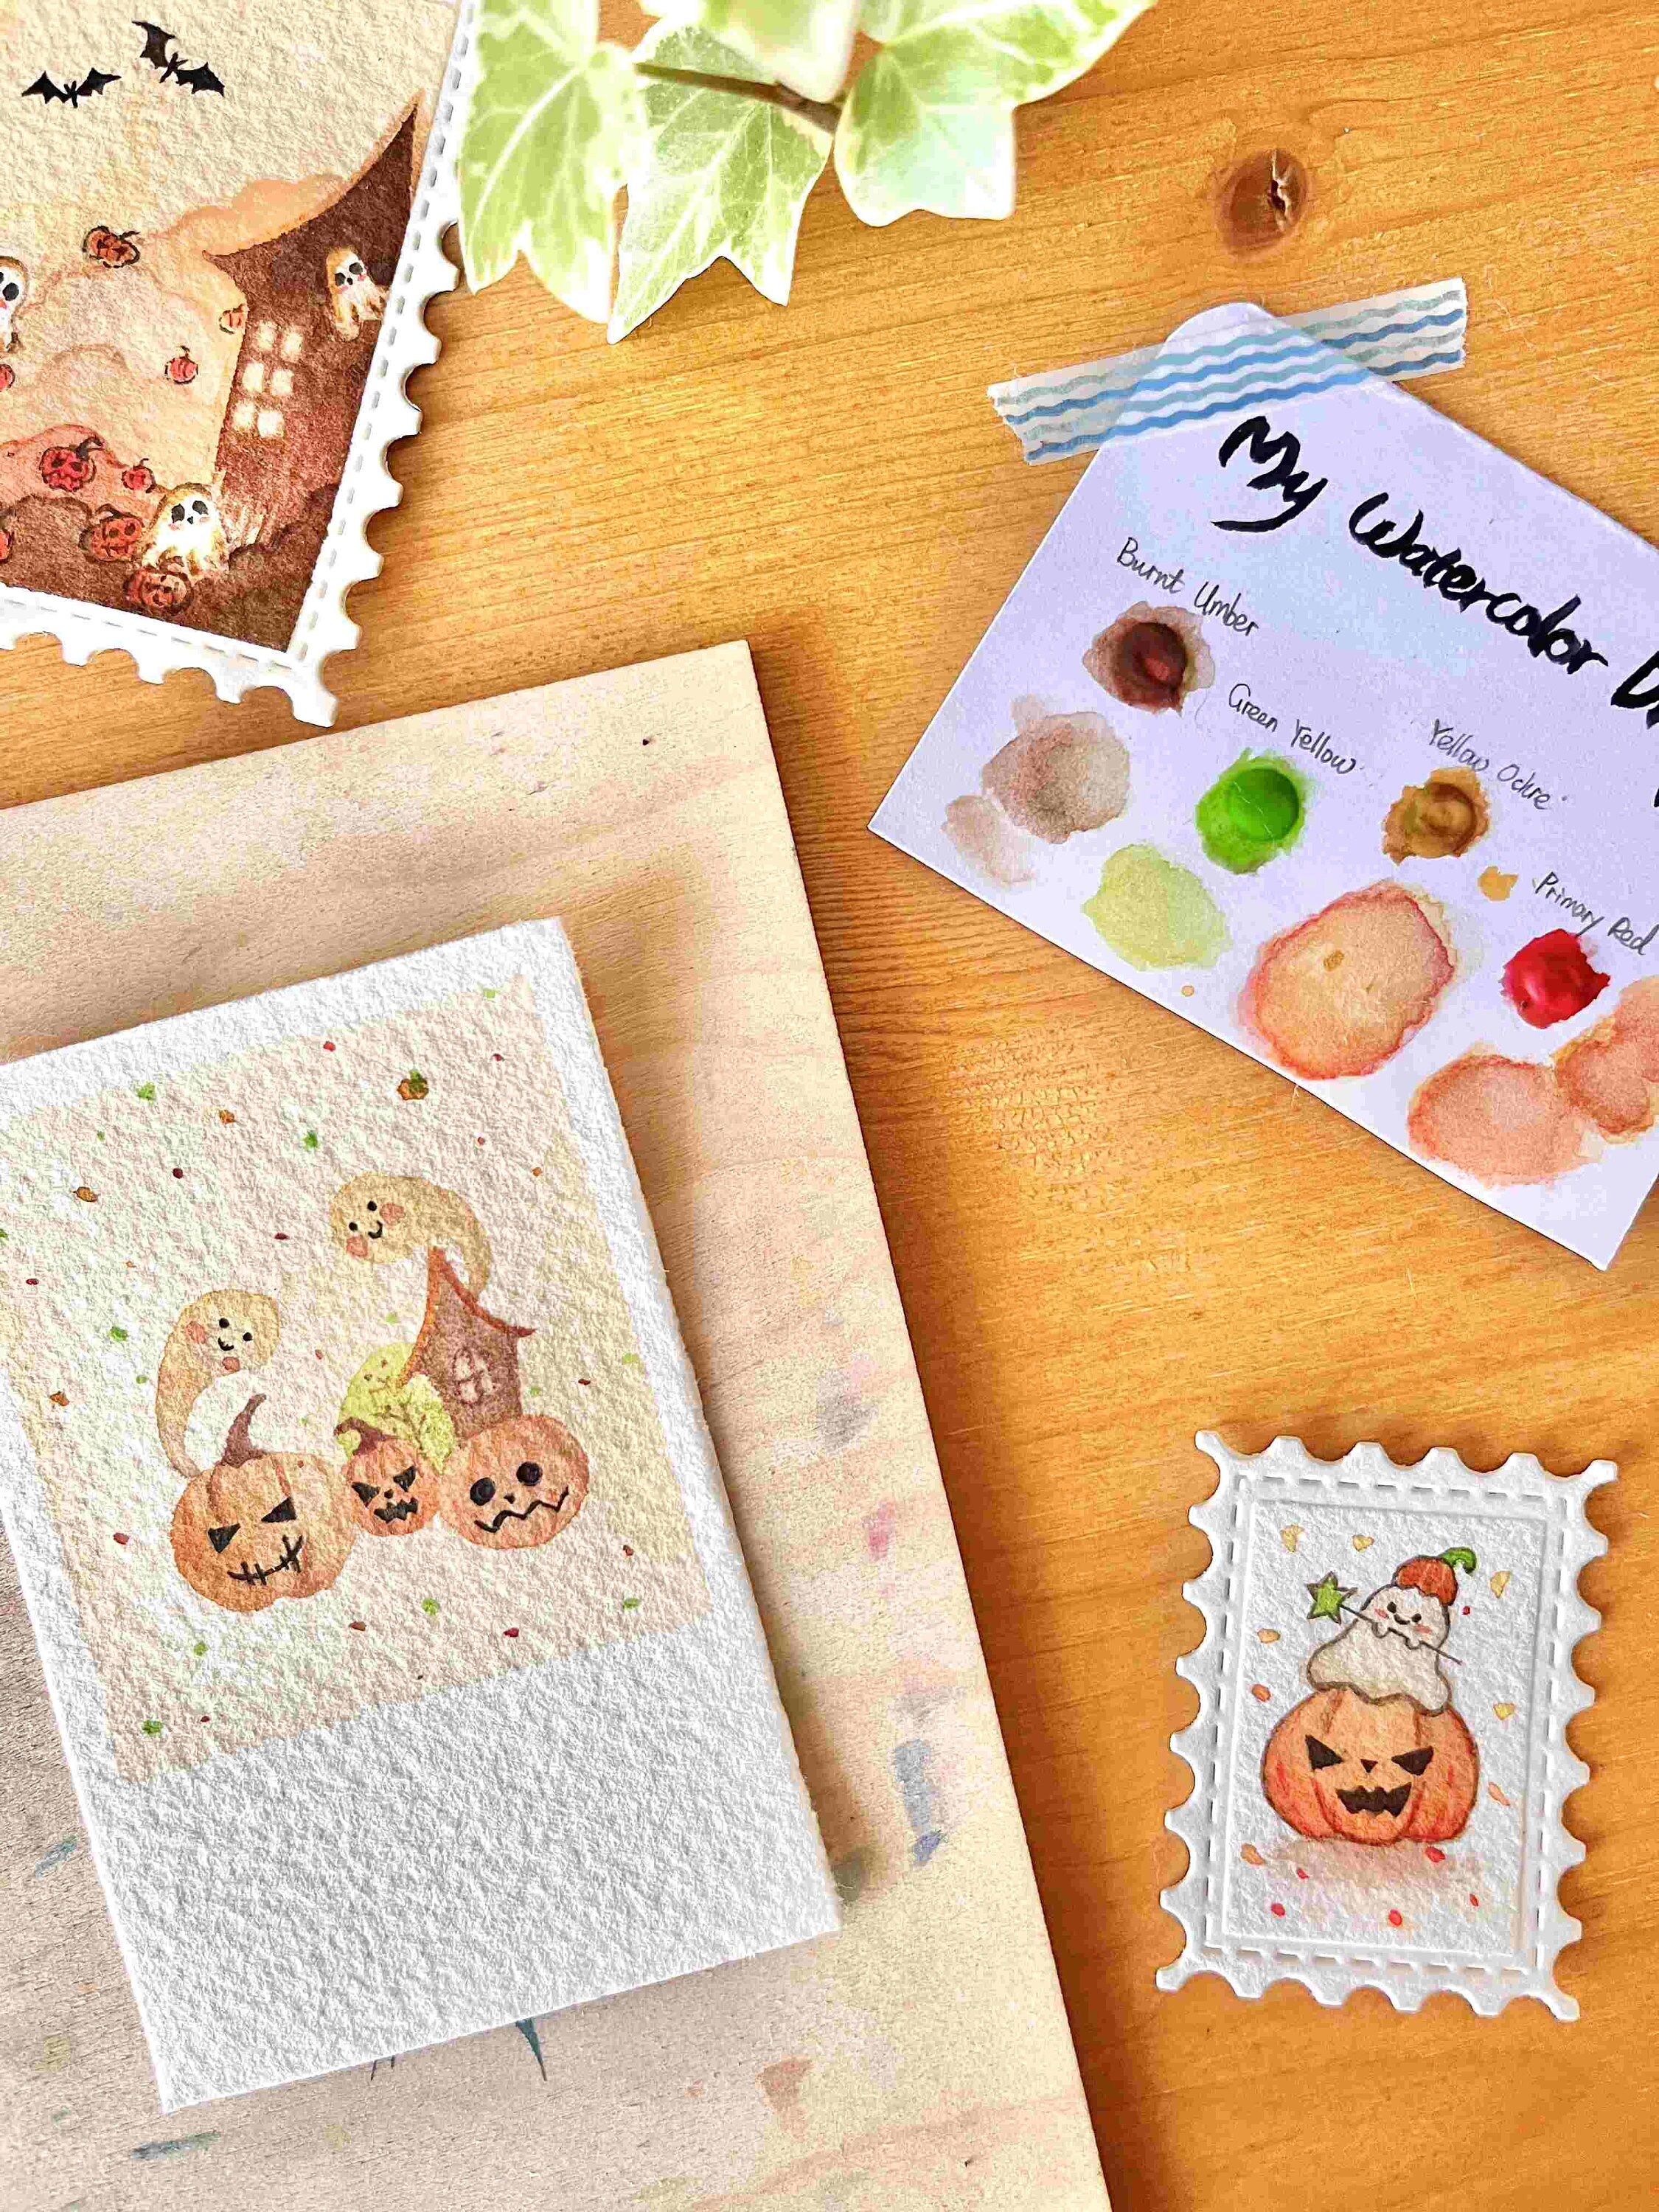 Mini Watercolor Painting Kit Halloween Party Easy DIY Beginner